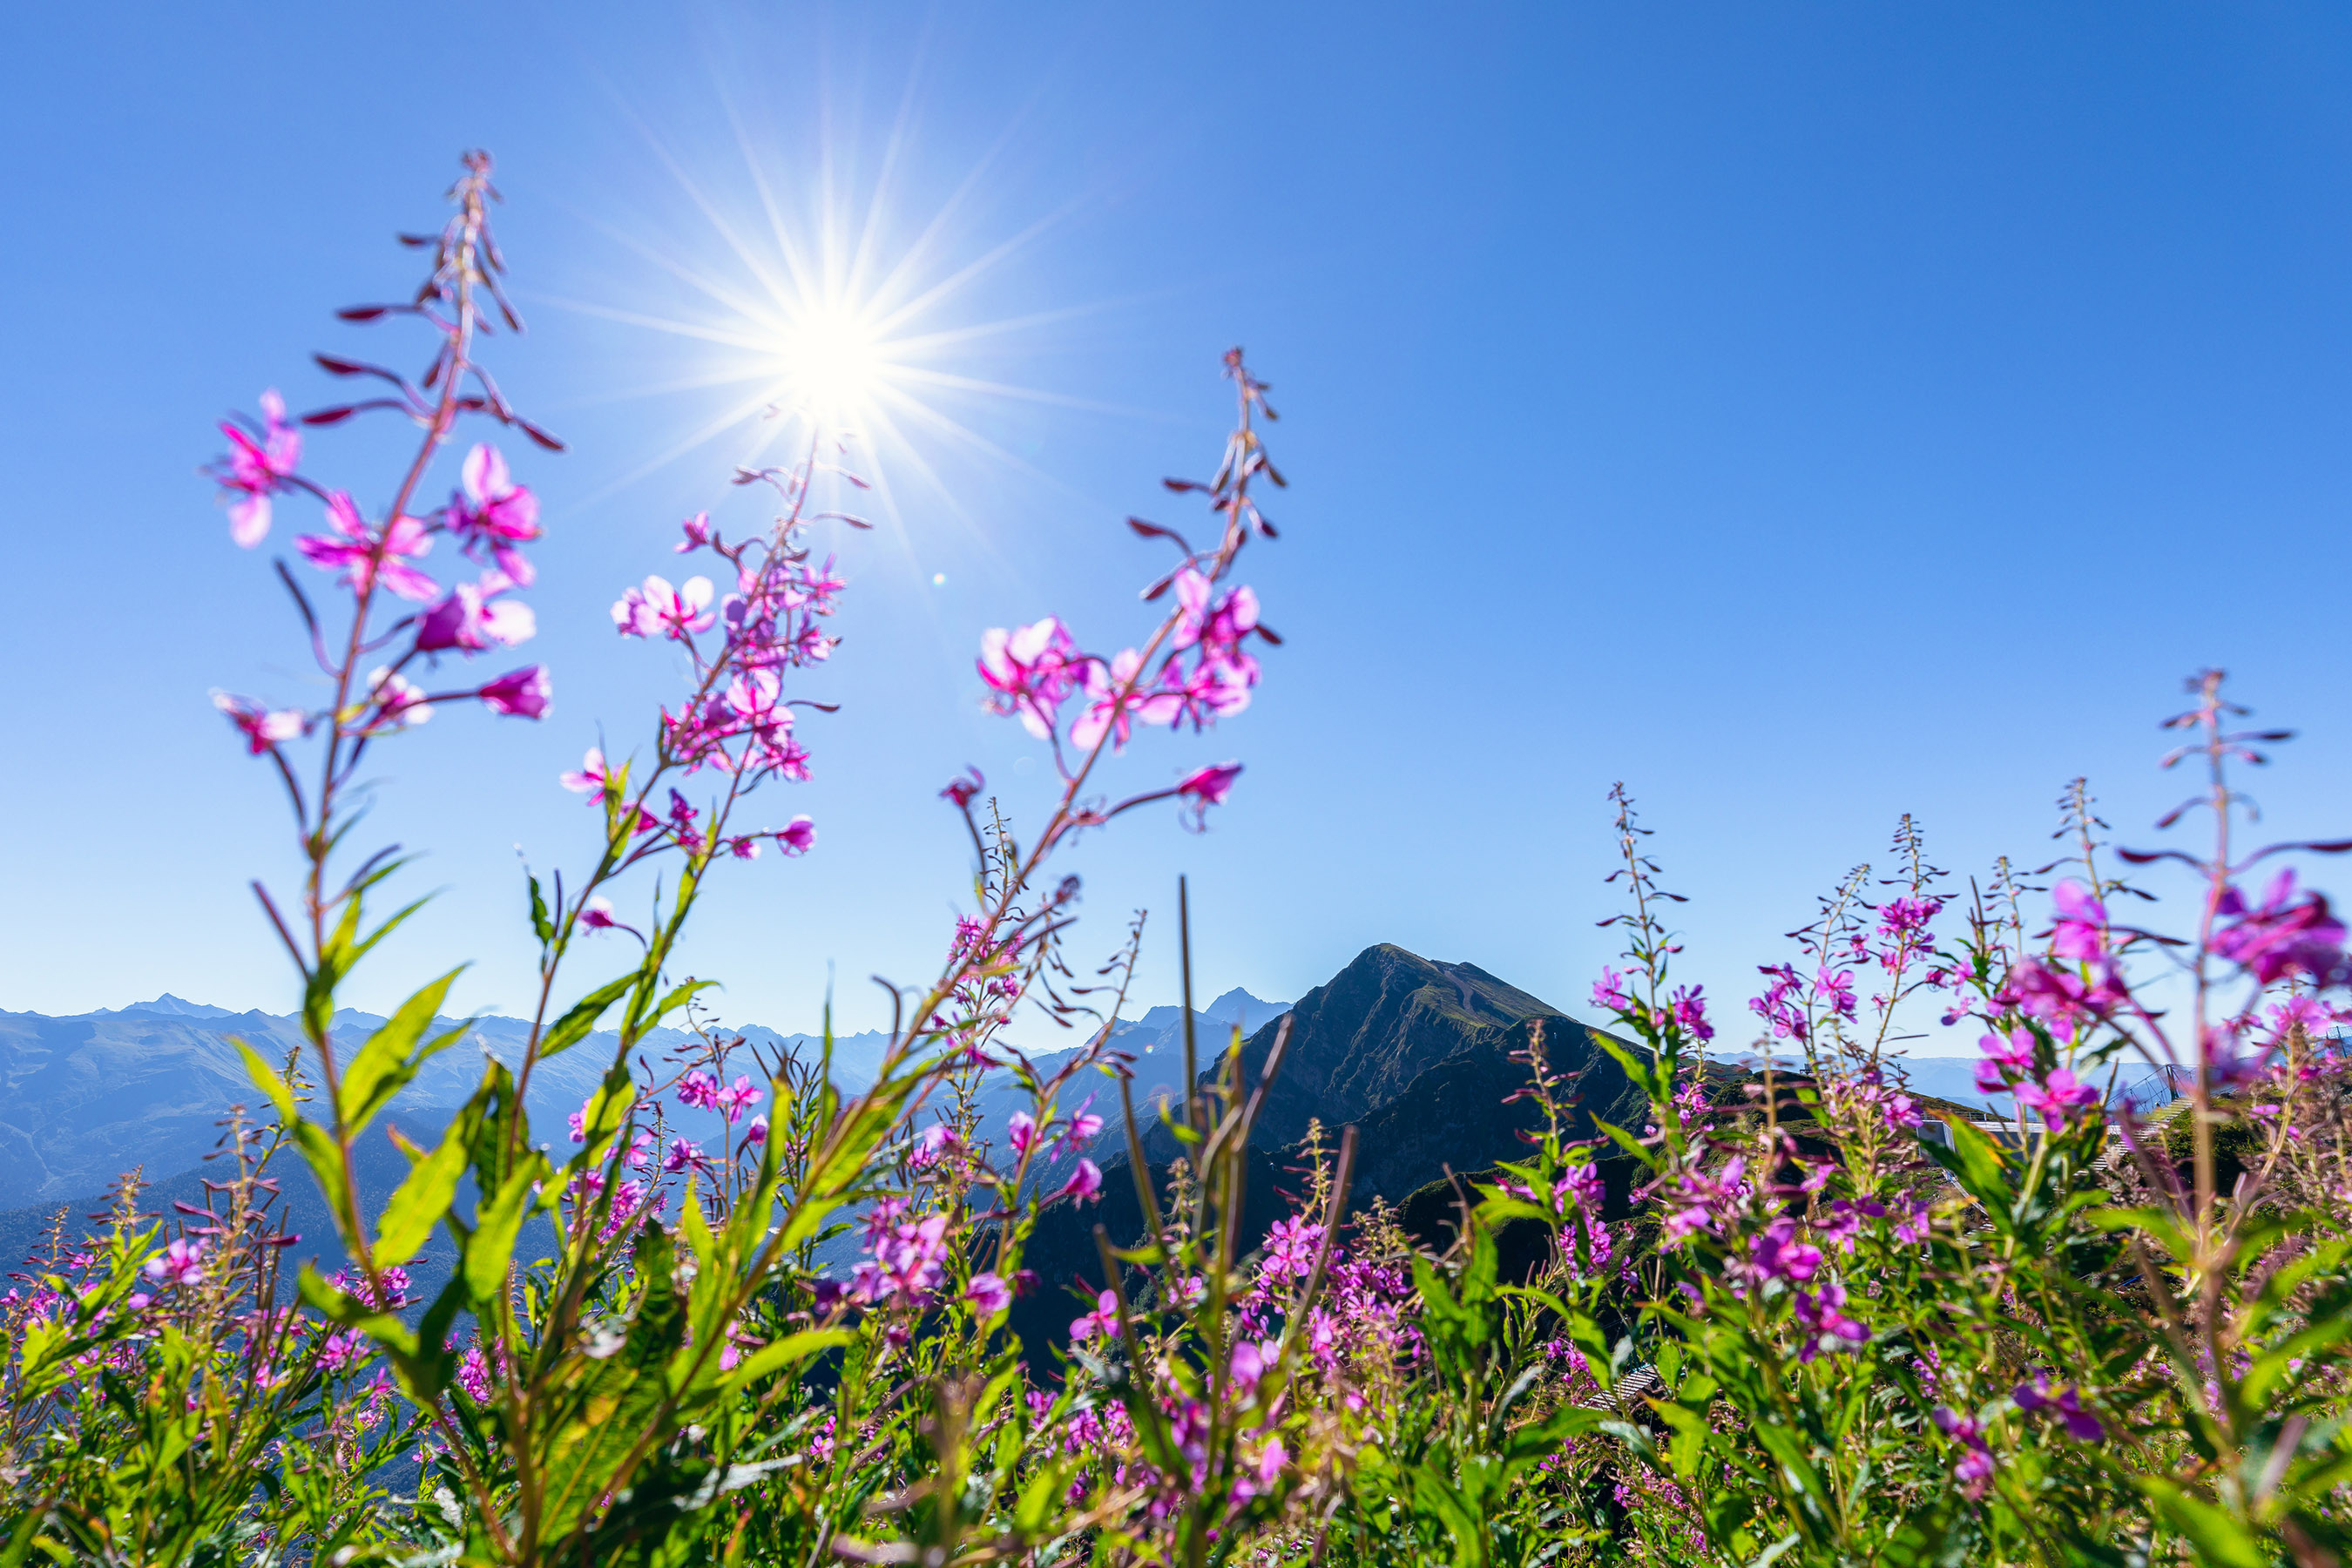 Курорт "Роза Хутор" летом предложит 110 км пеших троп для прогулок в горах